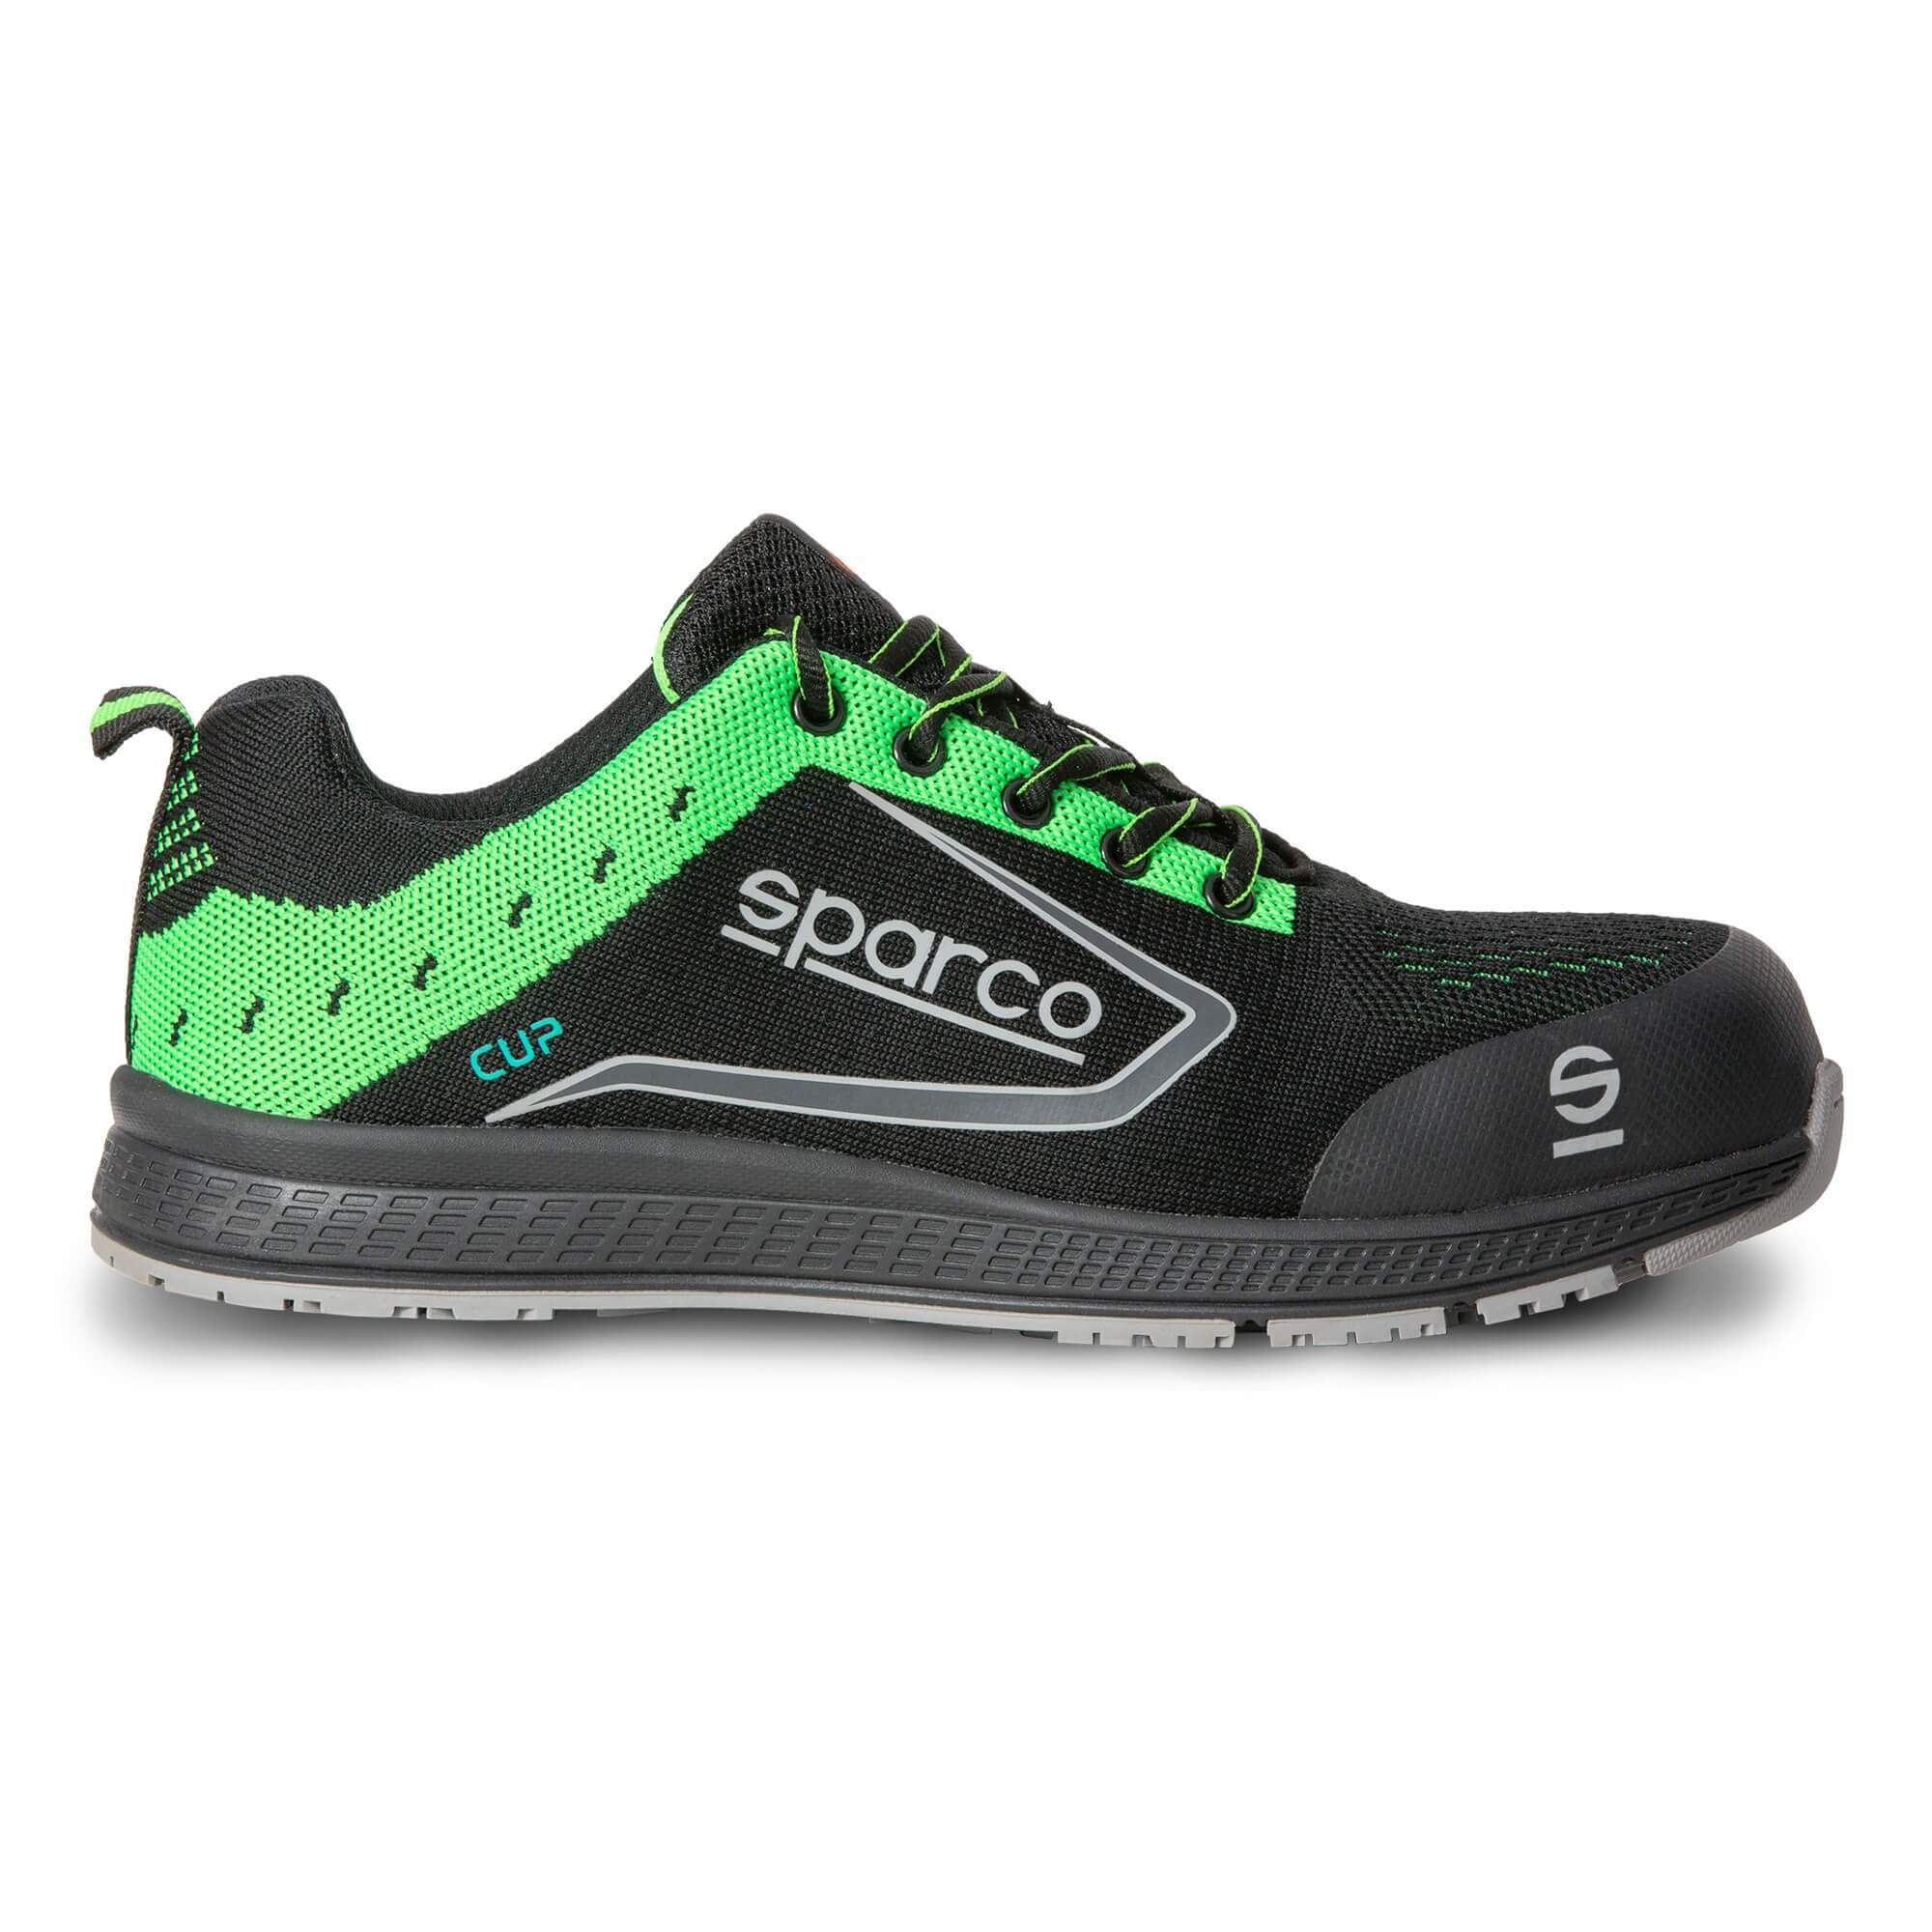 Chaussures de sécurité femme Sparco Practice S1P SRC légères